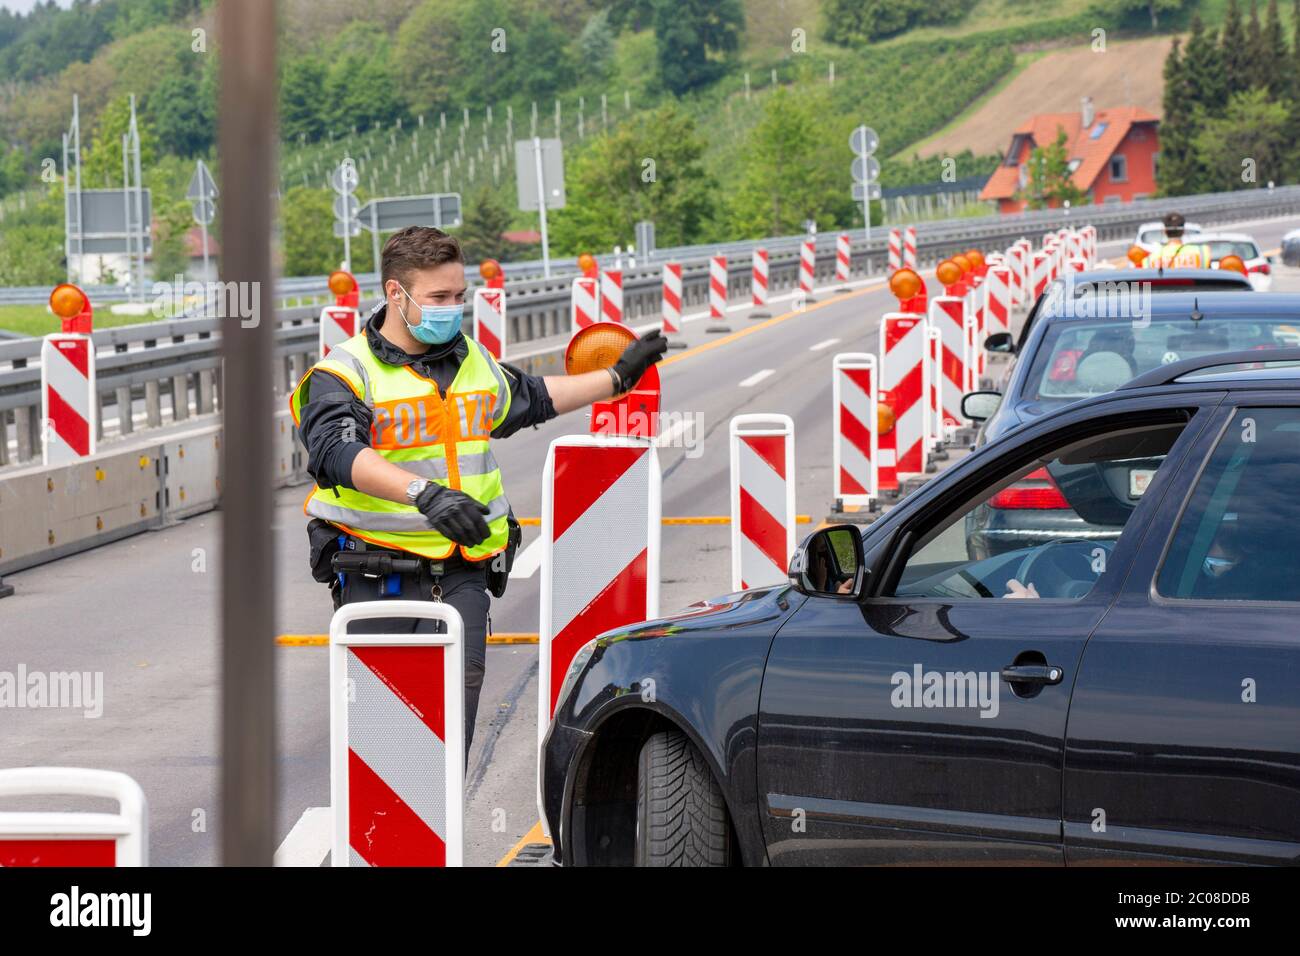 Kontrollen beim Grenzverkehr nach der Lockerung der Grenze Österreich - Deutschland. Lindau, 16.05.2020 Foto Stock